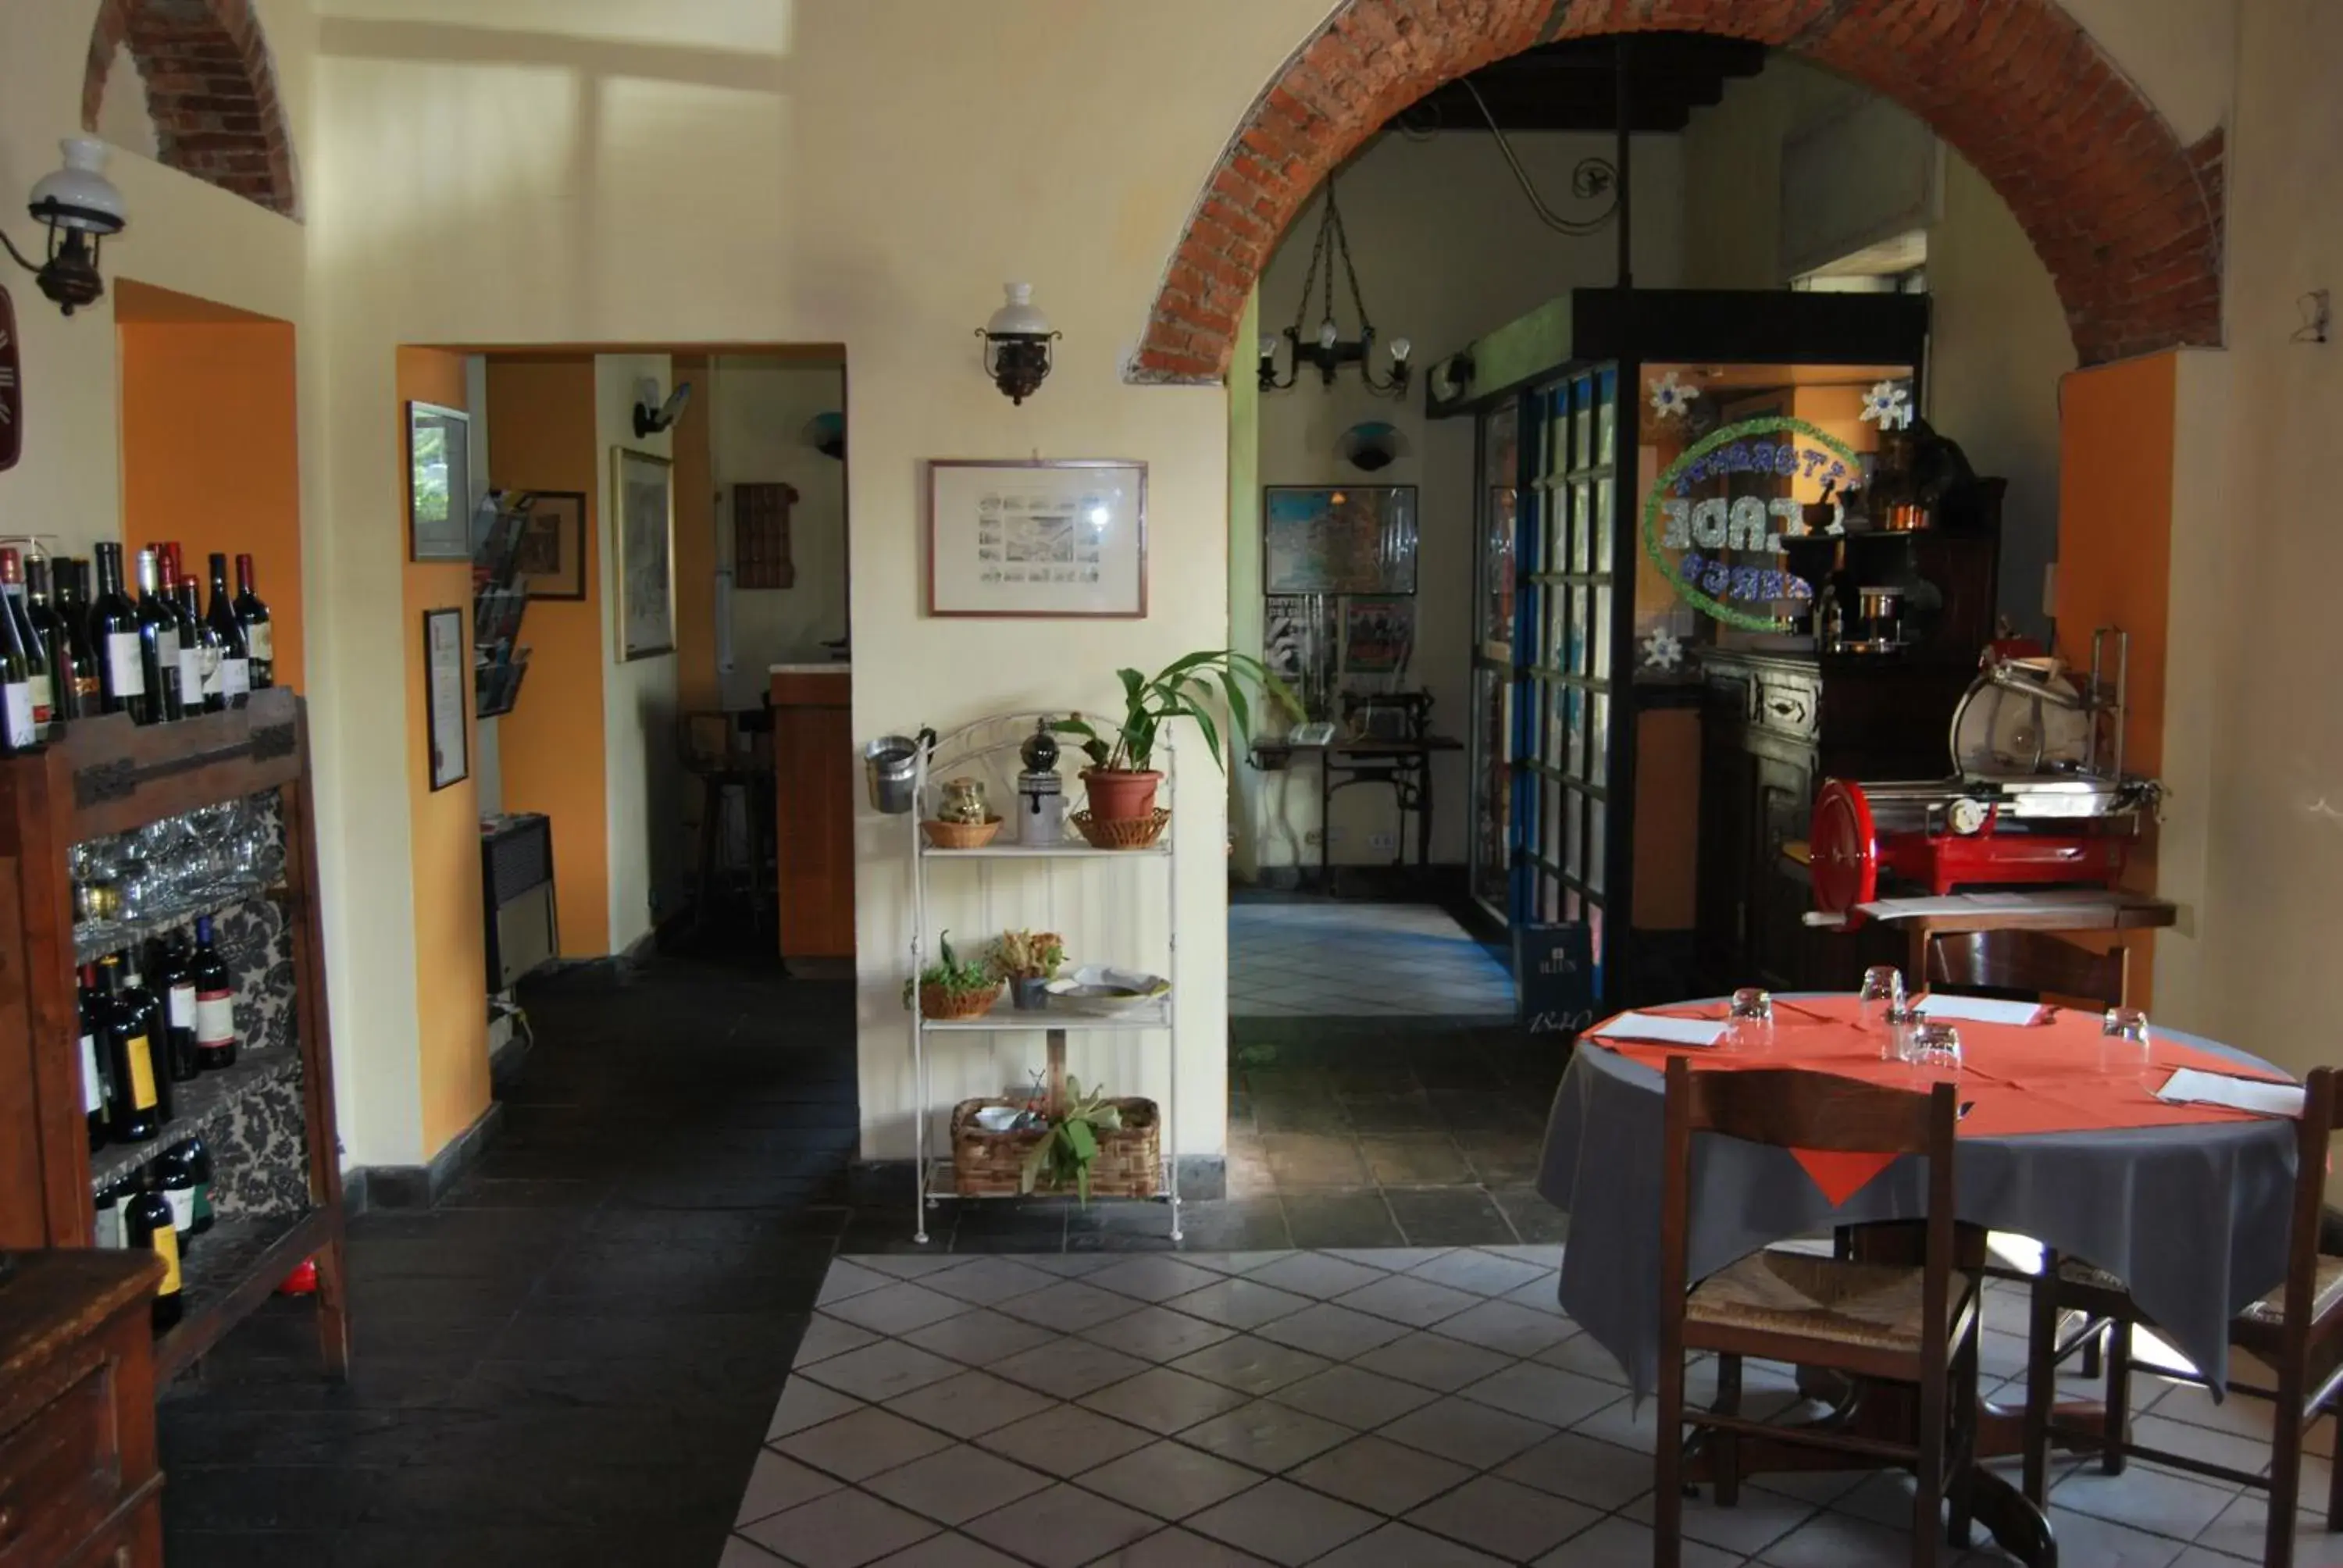 Restaurant/Places to Eat in Ristorante Albergo Arcade